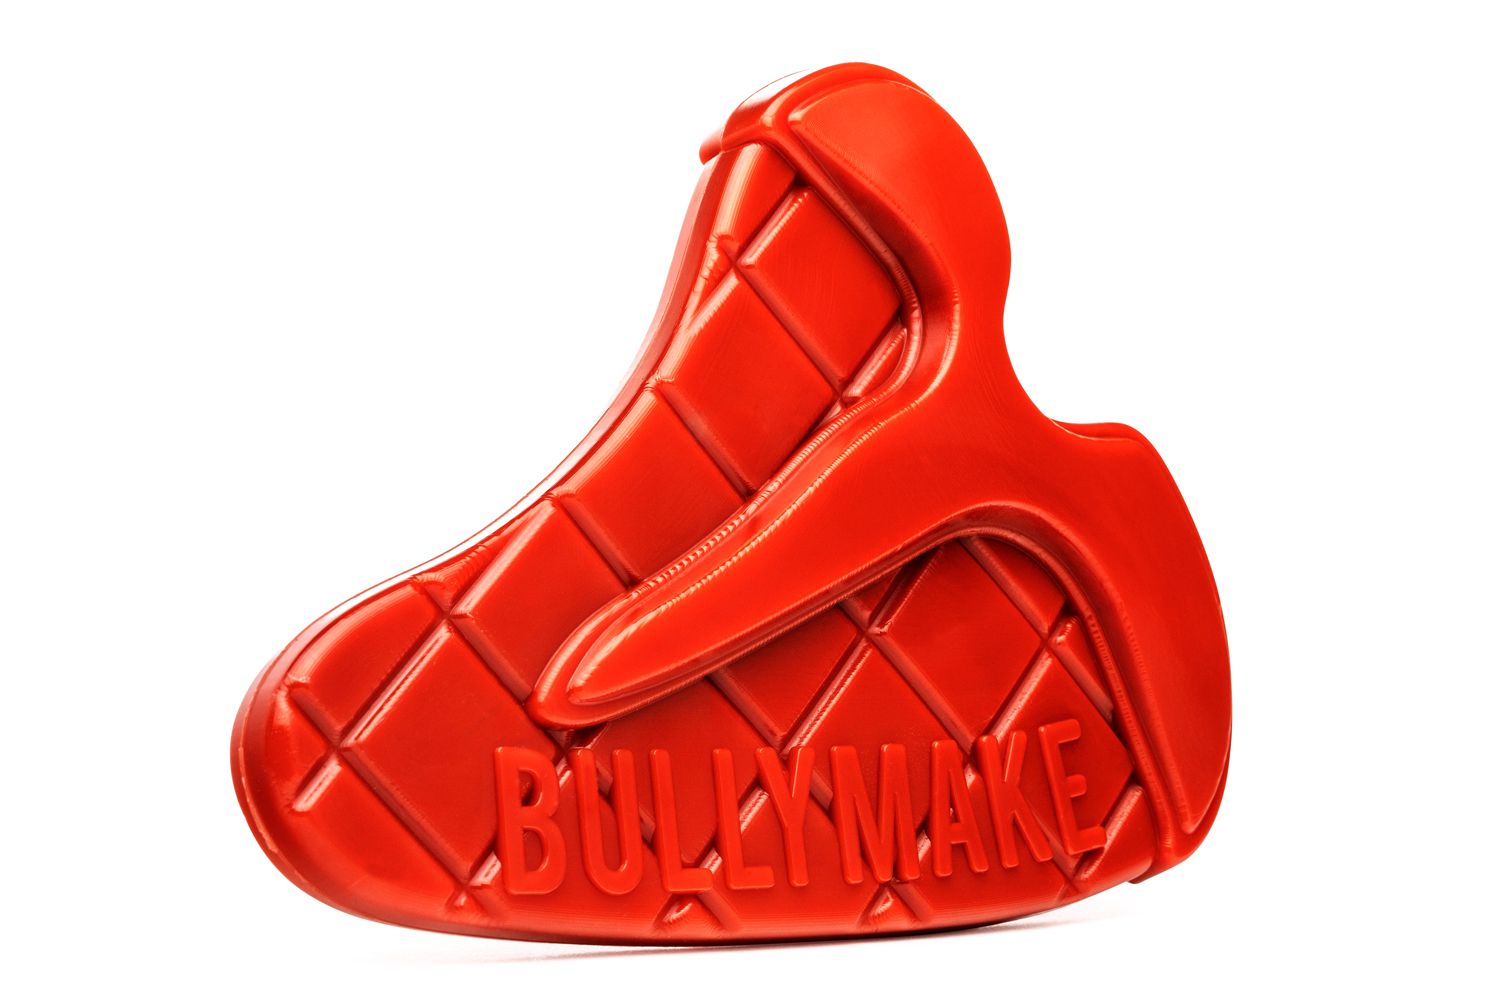 Bullymake Steak Dog Toy